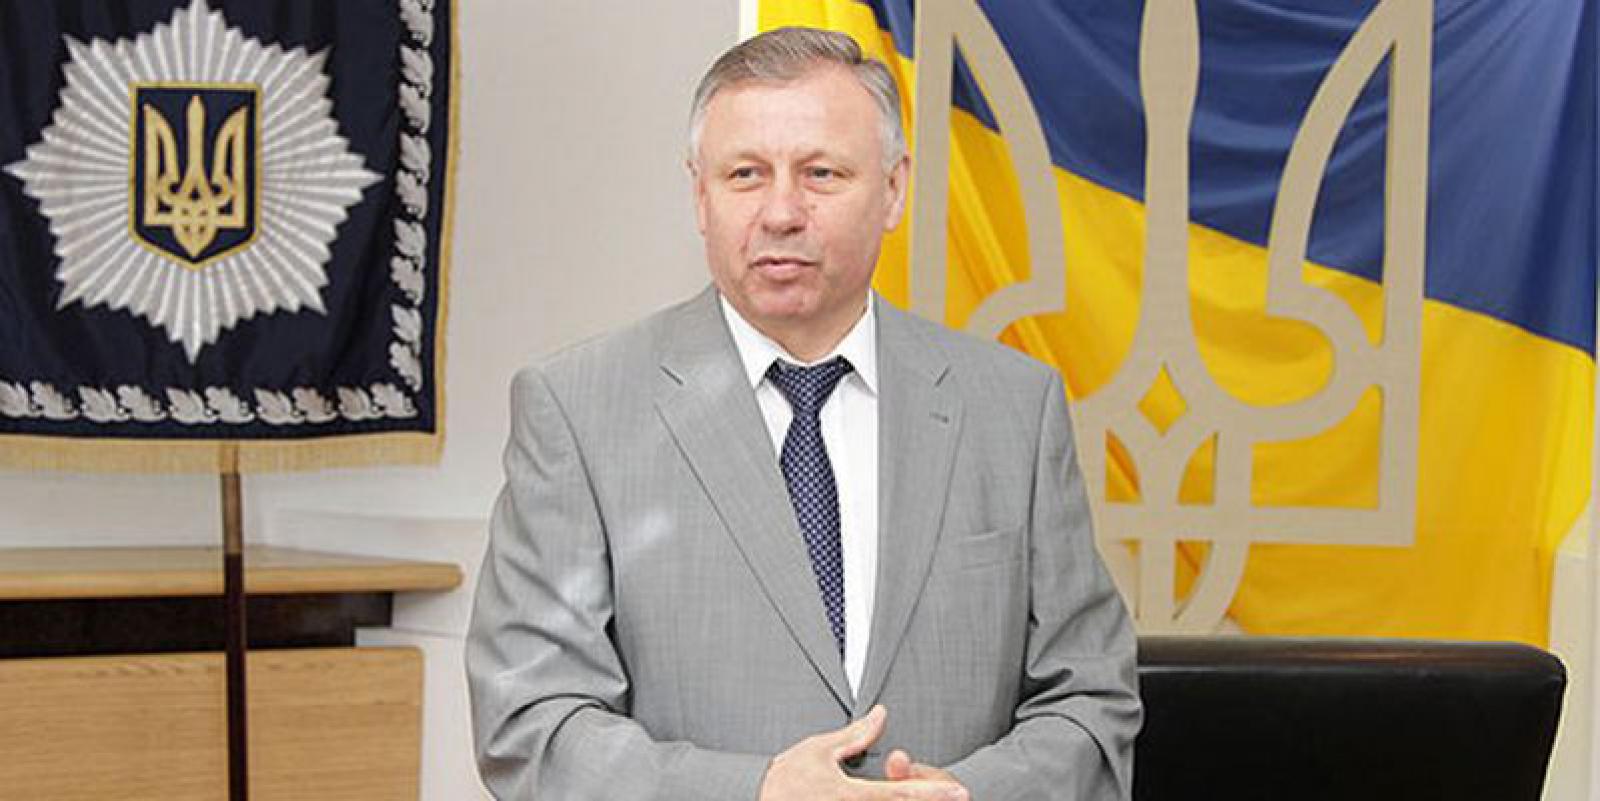 Сергей Чеботарь фигурирует в деле о хищении средств в МВД